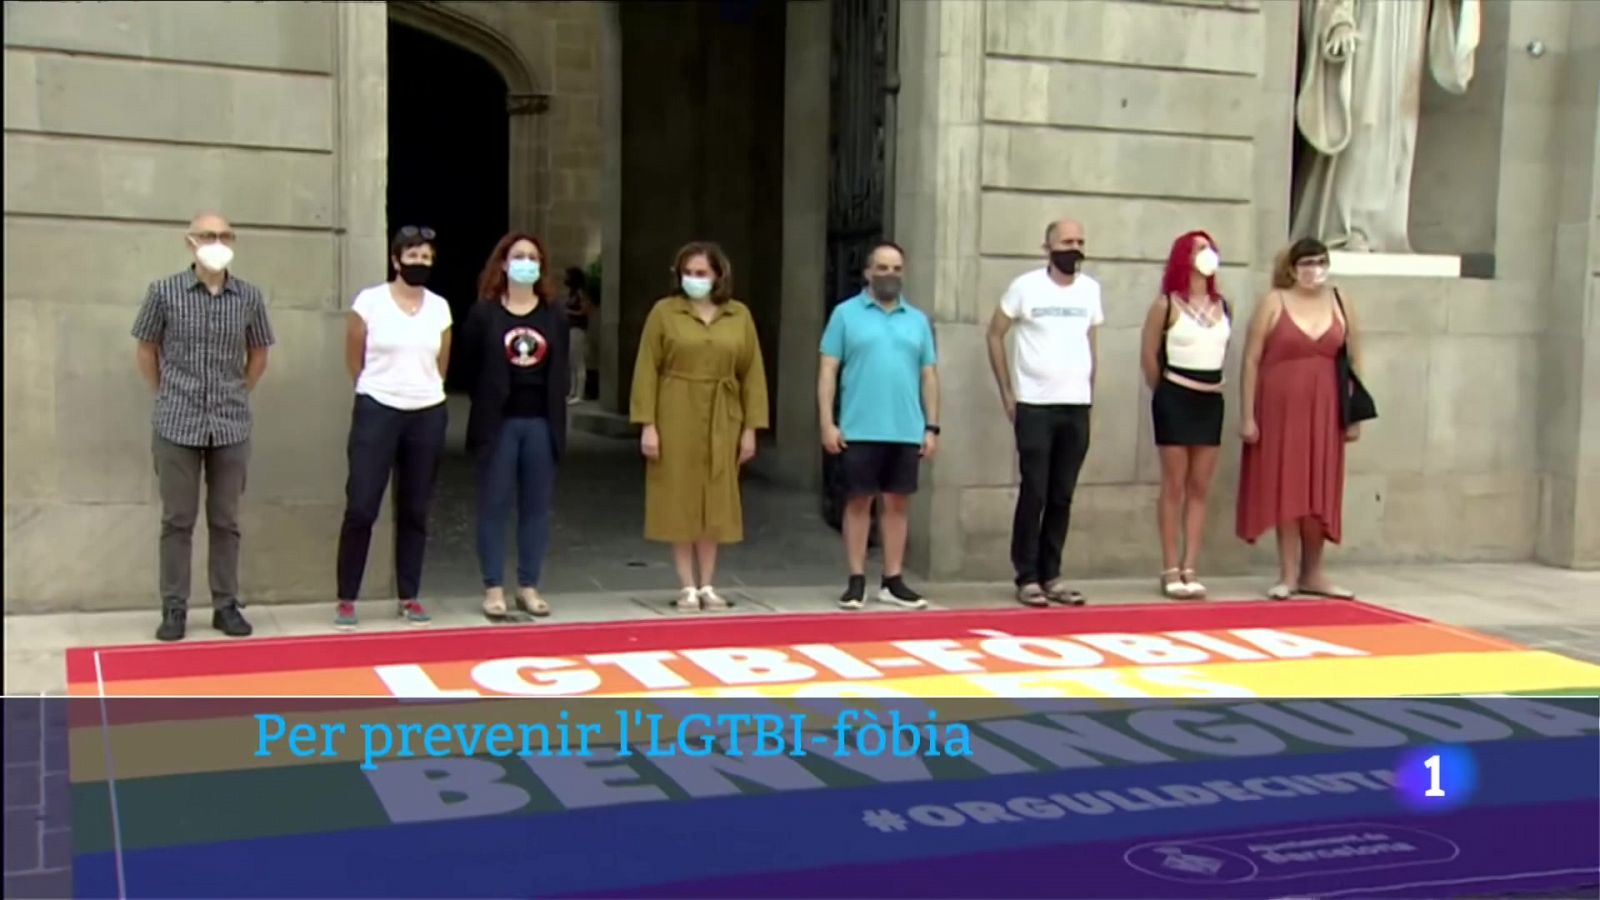 Catifa amb l'eslògan "la lgtbifòbia no es benvnguda" a la porta de l'ajuntament de Barcelona, en rebuig a les agressions patides per aquest col·lectiu